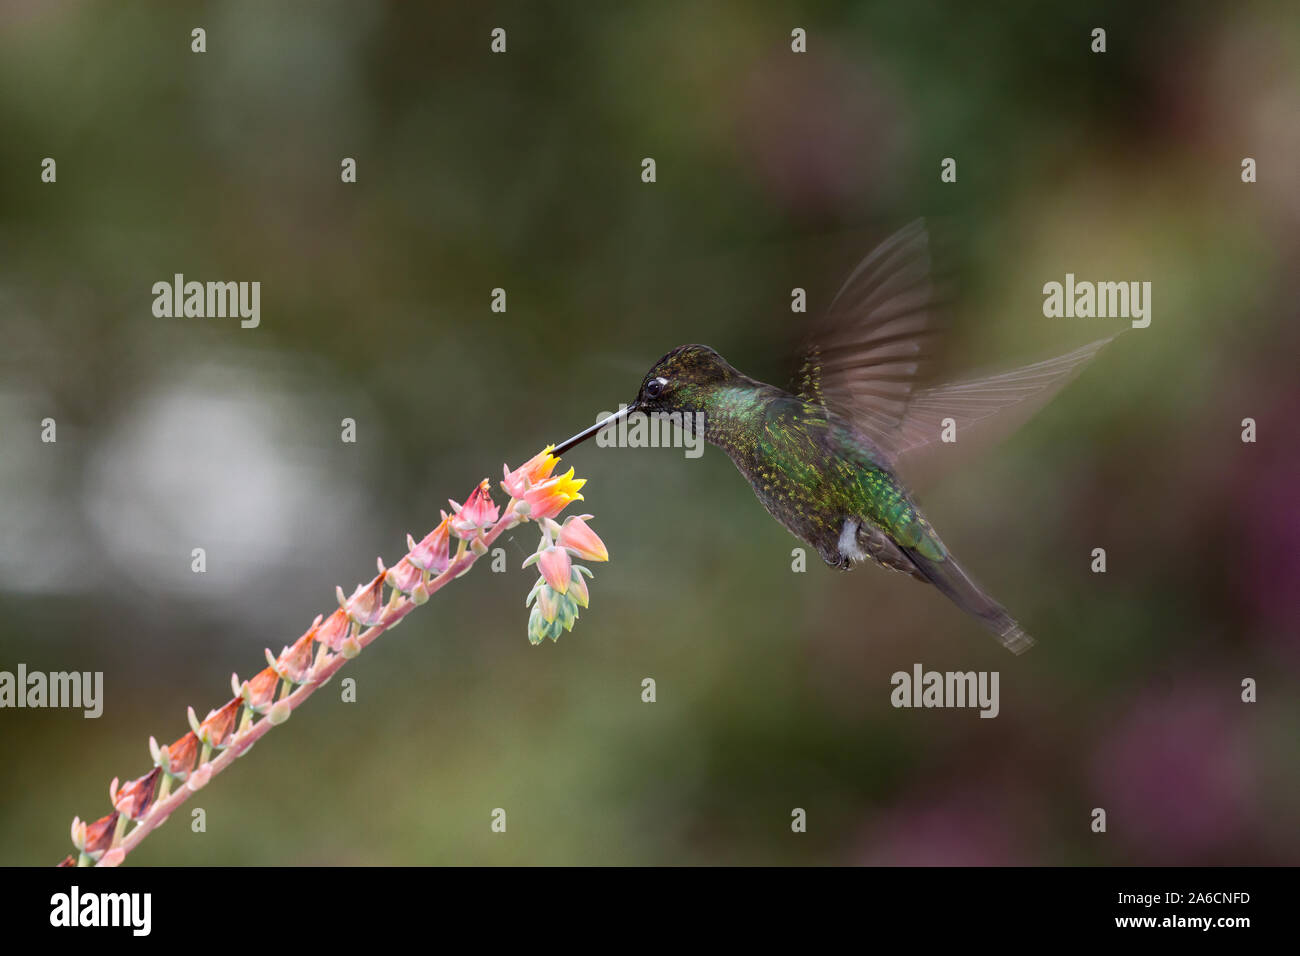 Ein männlicher herrlichen Hummingbird - Eugenes fulgens, Feeds auf eine tropische Blume in Costa Rica. Flash wurde verwendet, um teilweise Bewegung der Flügel einfrieren. Stockfoto